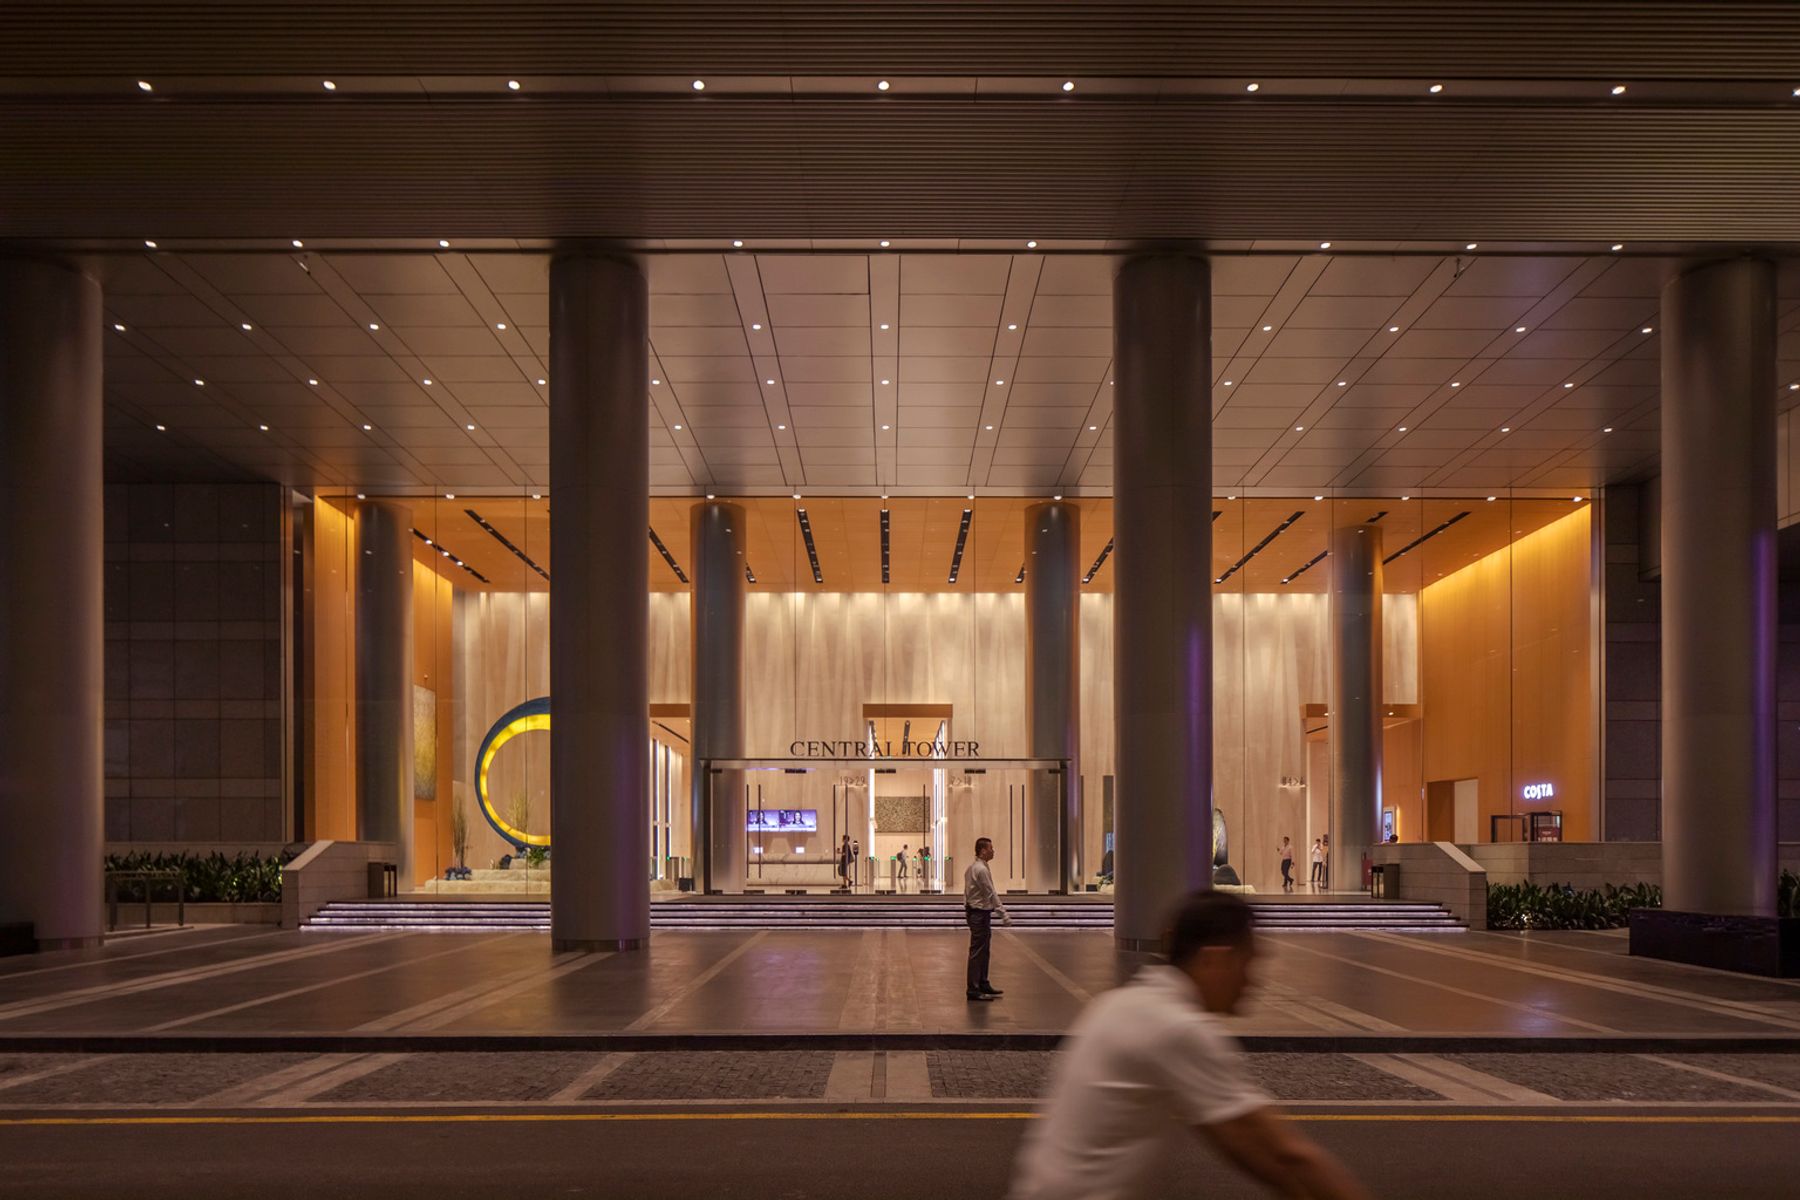 Central Tower Lobby, Cantón. Diseño de iluminación: Isometrix Lighting Design. Fotografía: Jackie Chan, Sídney.